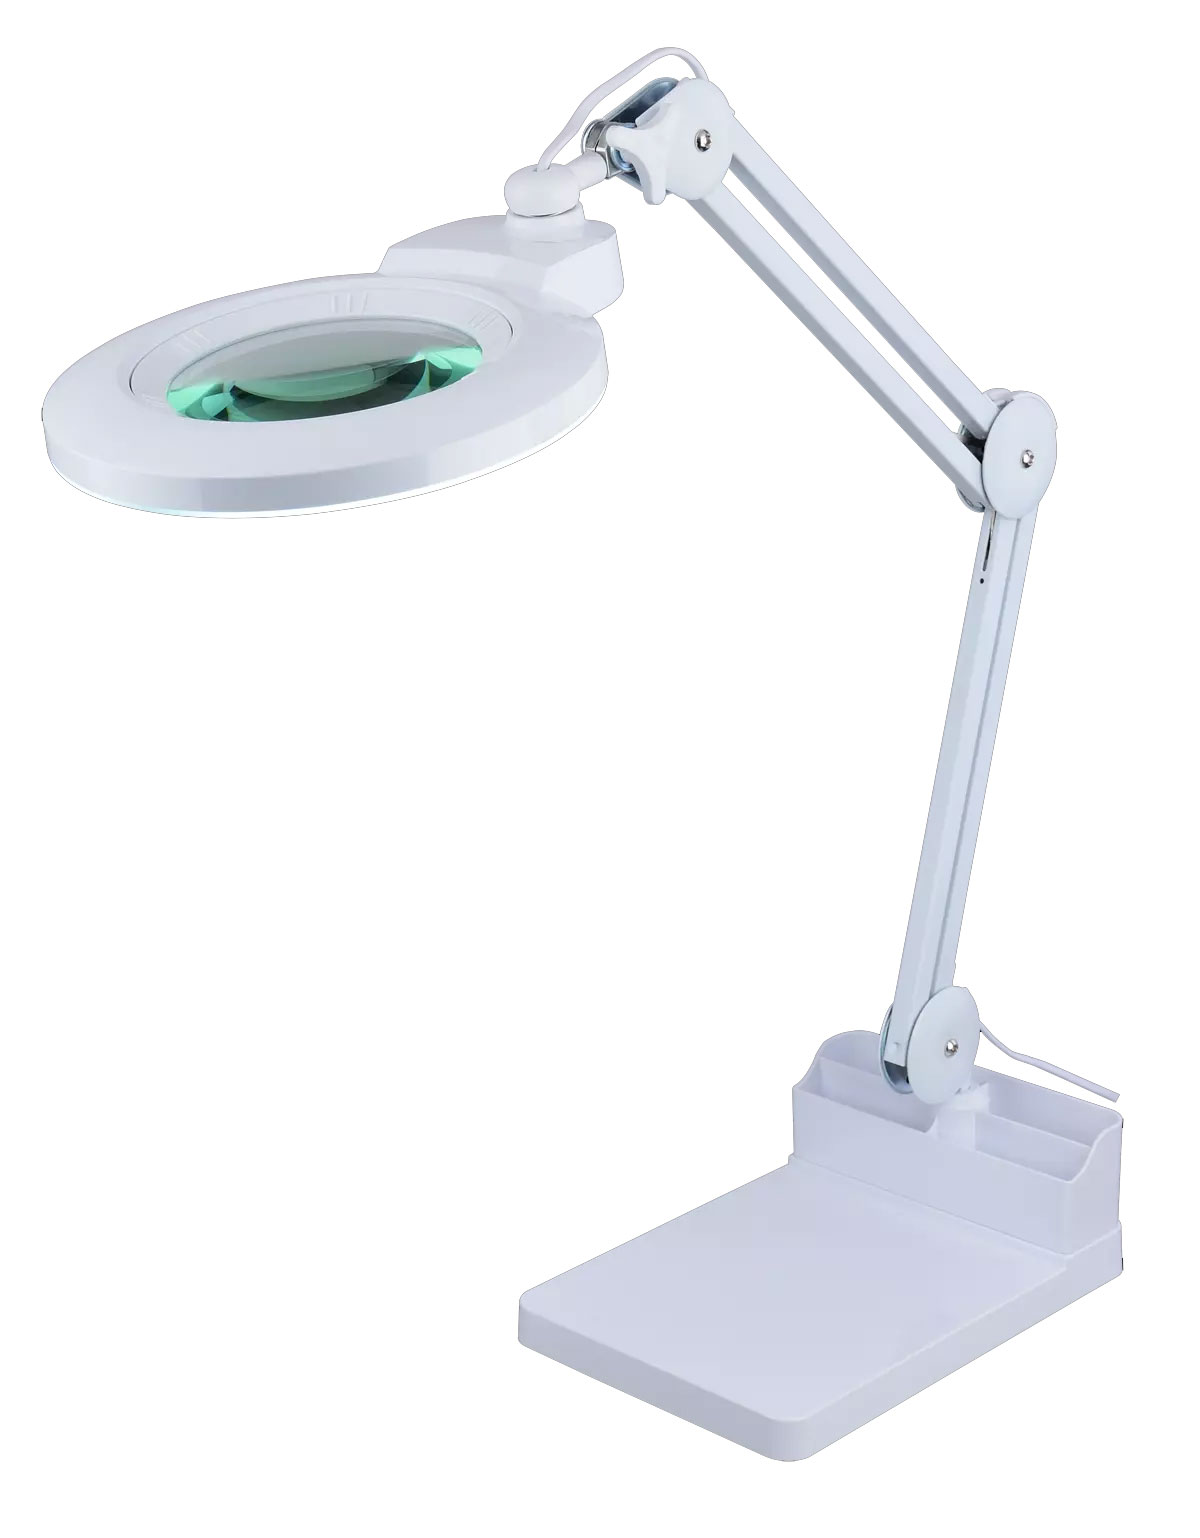 LAM-057 prostokątna podstawa na stół do lampy z lupą, podstawka biurkowa do lamp z lupą, podstawka na blat do lampy z lupą,